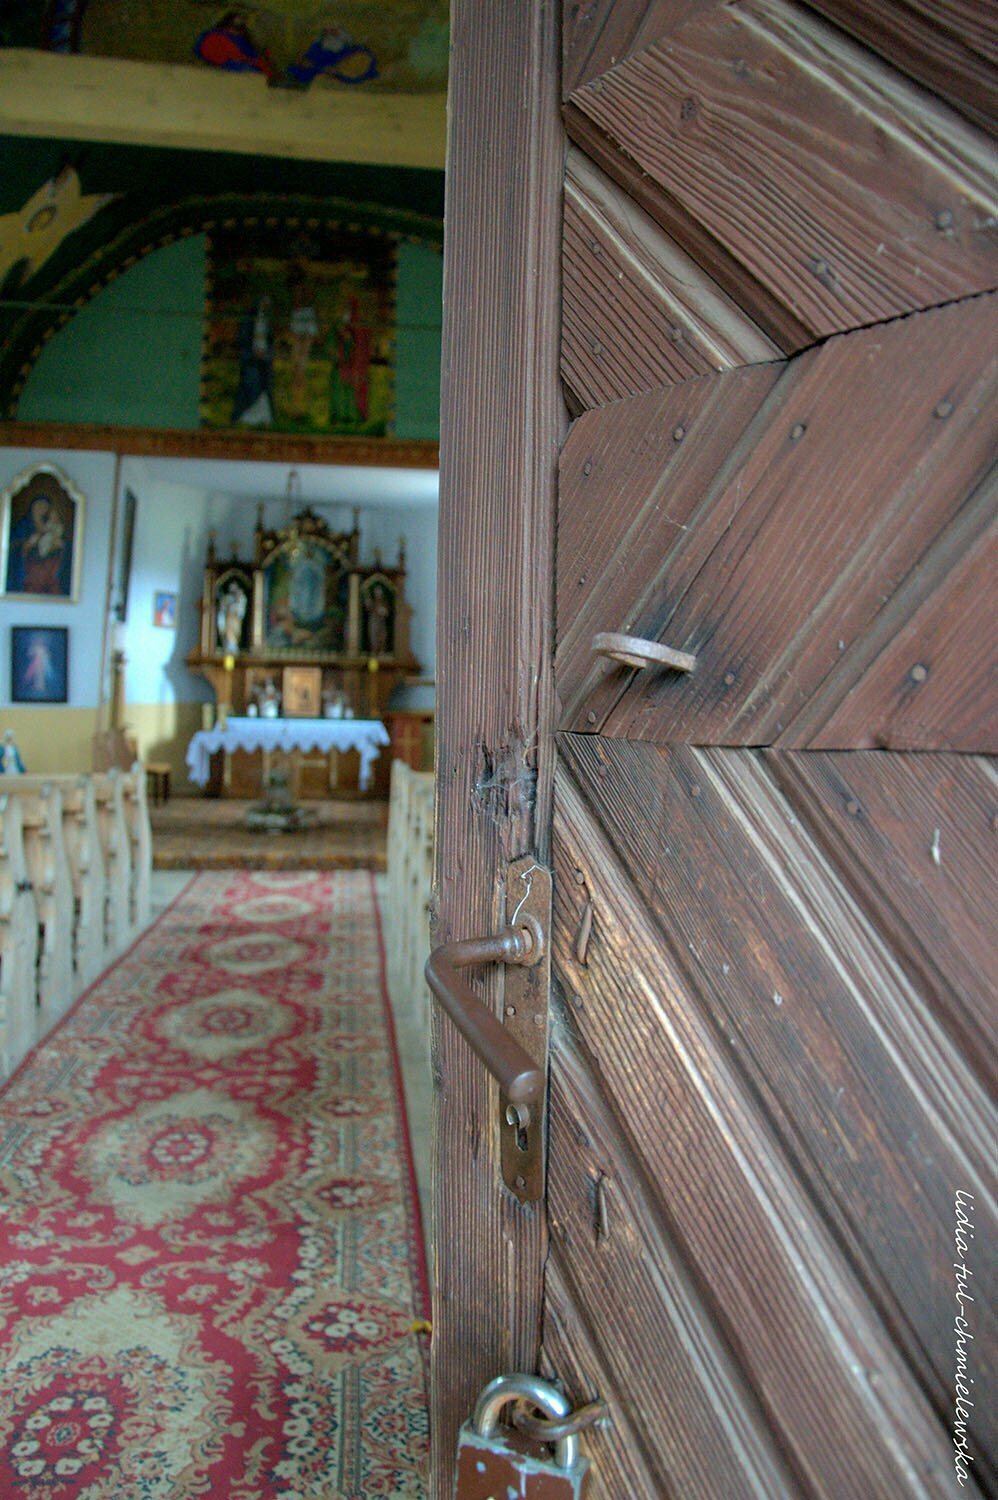 Wieś Polana w gminie Czarna, cerkiew w Polanie / fot. Lidia Tul-Chmielewska